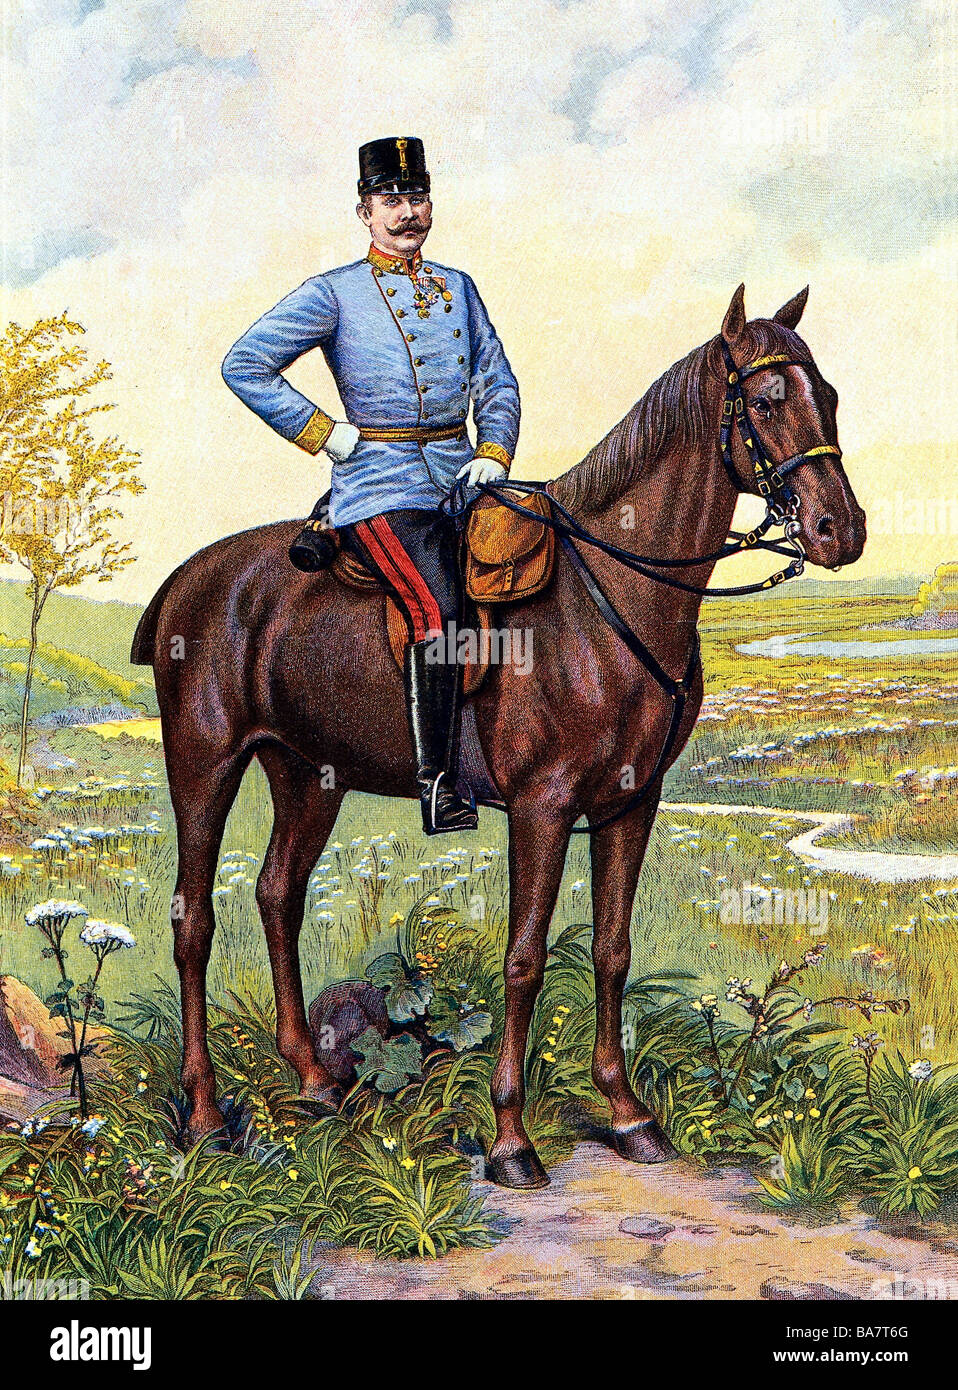 Francis Ferdinand, 18.12.1863 - 28.6.1914, Archduke, héritier apparent de l'Autriche-Hongrie 30.1.1889 - 28.6.1914, pleine longueur, à cheval, portant l'uniforme d'un k.u.k. général de la cavalerie, gravure de couleur, vers 1910, Banque D'Images